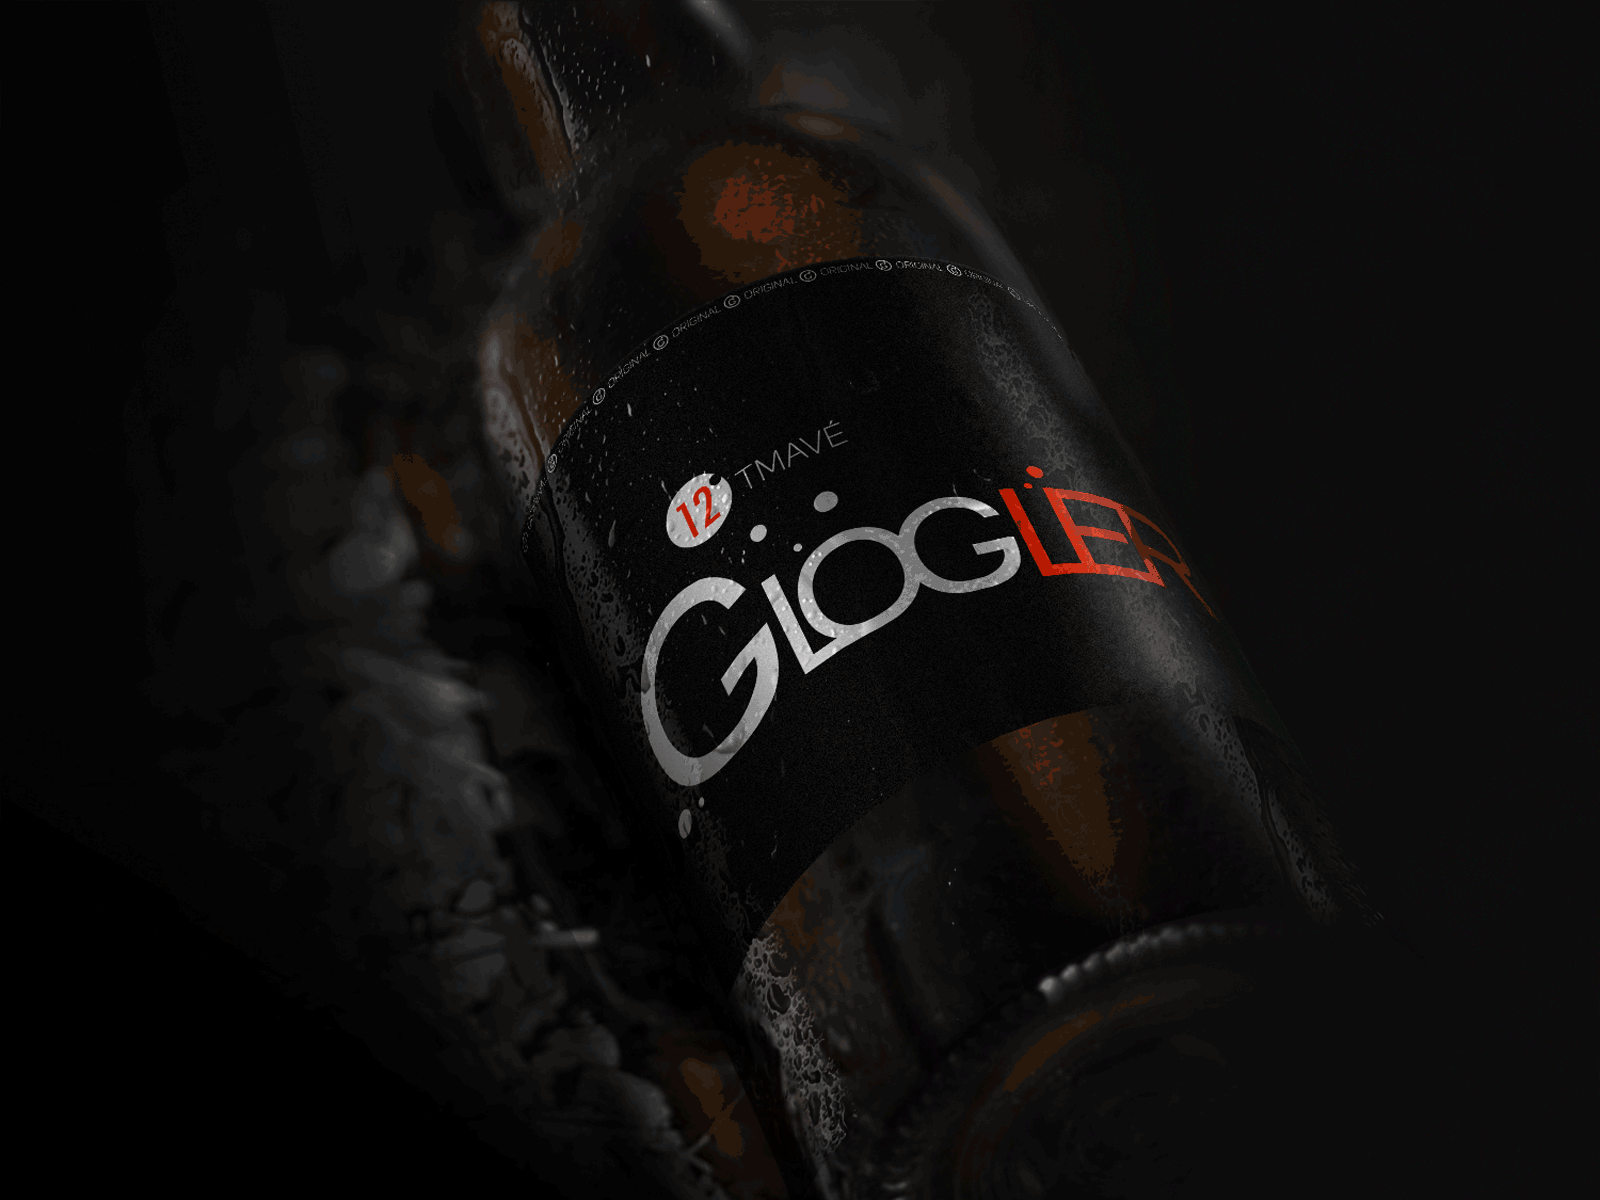 Glogler beer